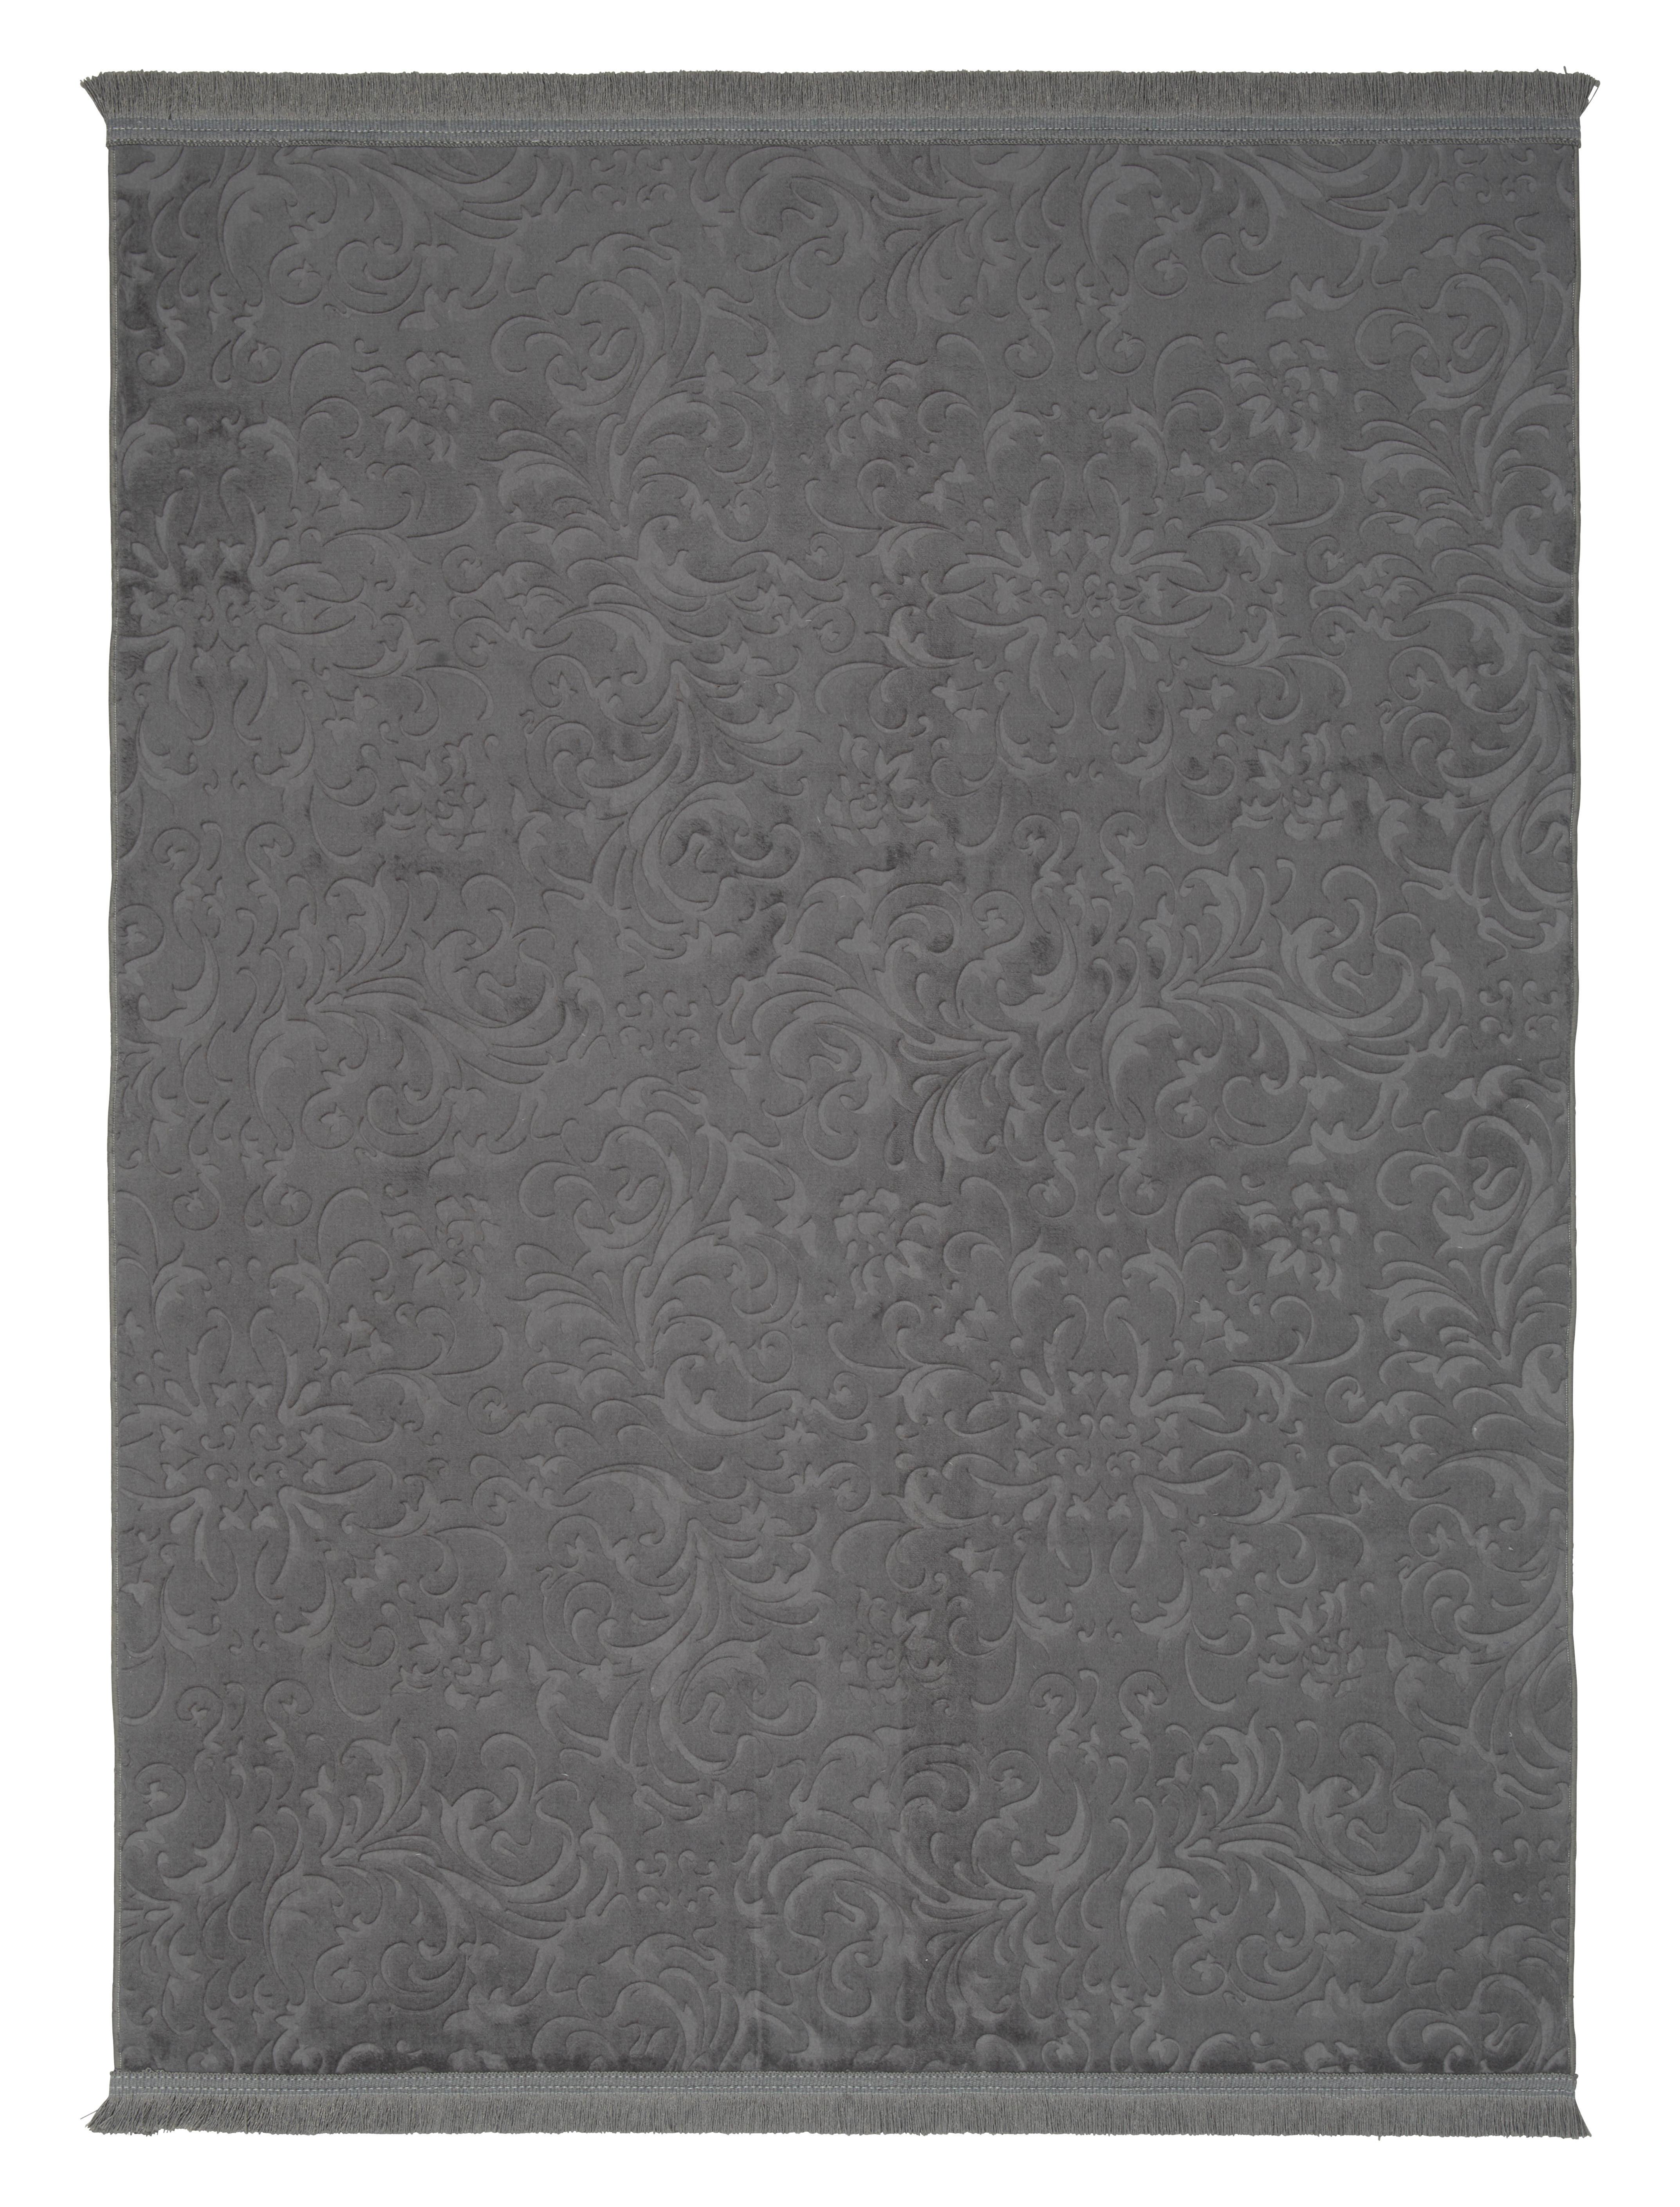 Tkaný Koberec Daphne 3, 150/220cm, Antracit - antracitová, Moderní, textil (150/220cm) - Modern Living